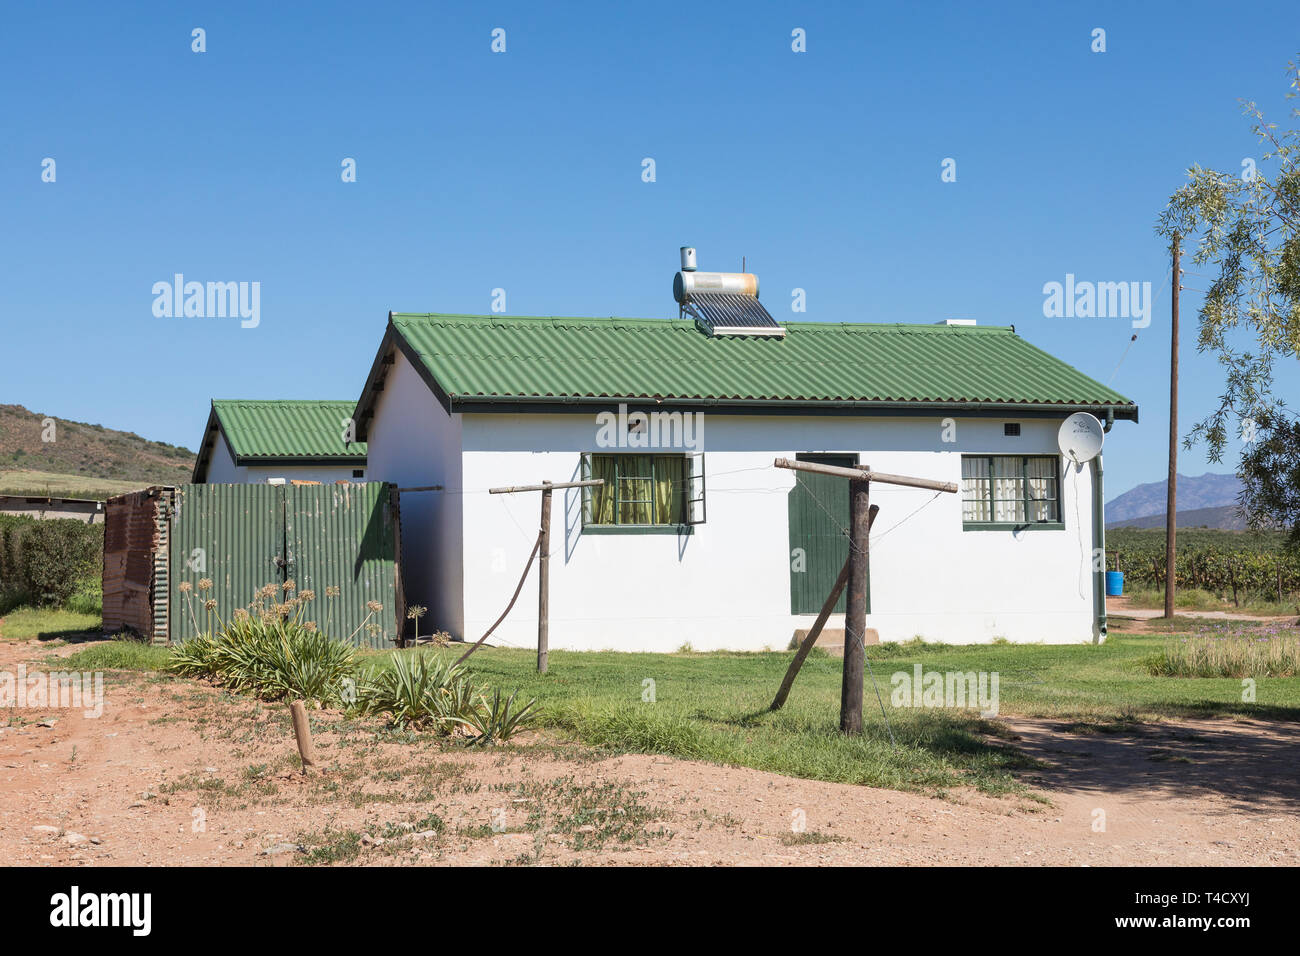 Fattoria del lavoratore cottage con tetto montato solare di acqua calda geyser per le fonti di energia rinnovabili e riscaldamento, Sud Africa Foto Stock